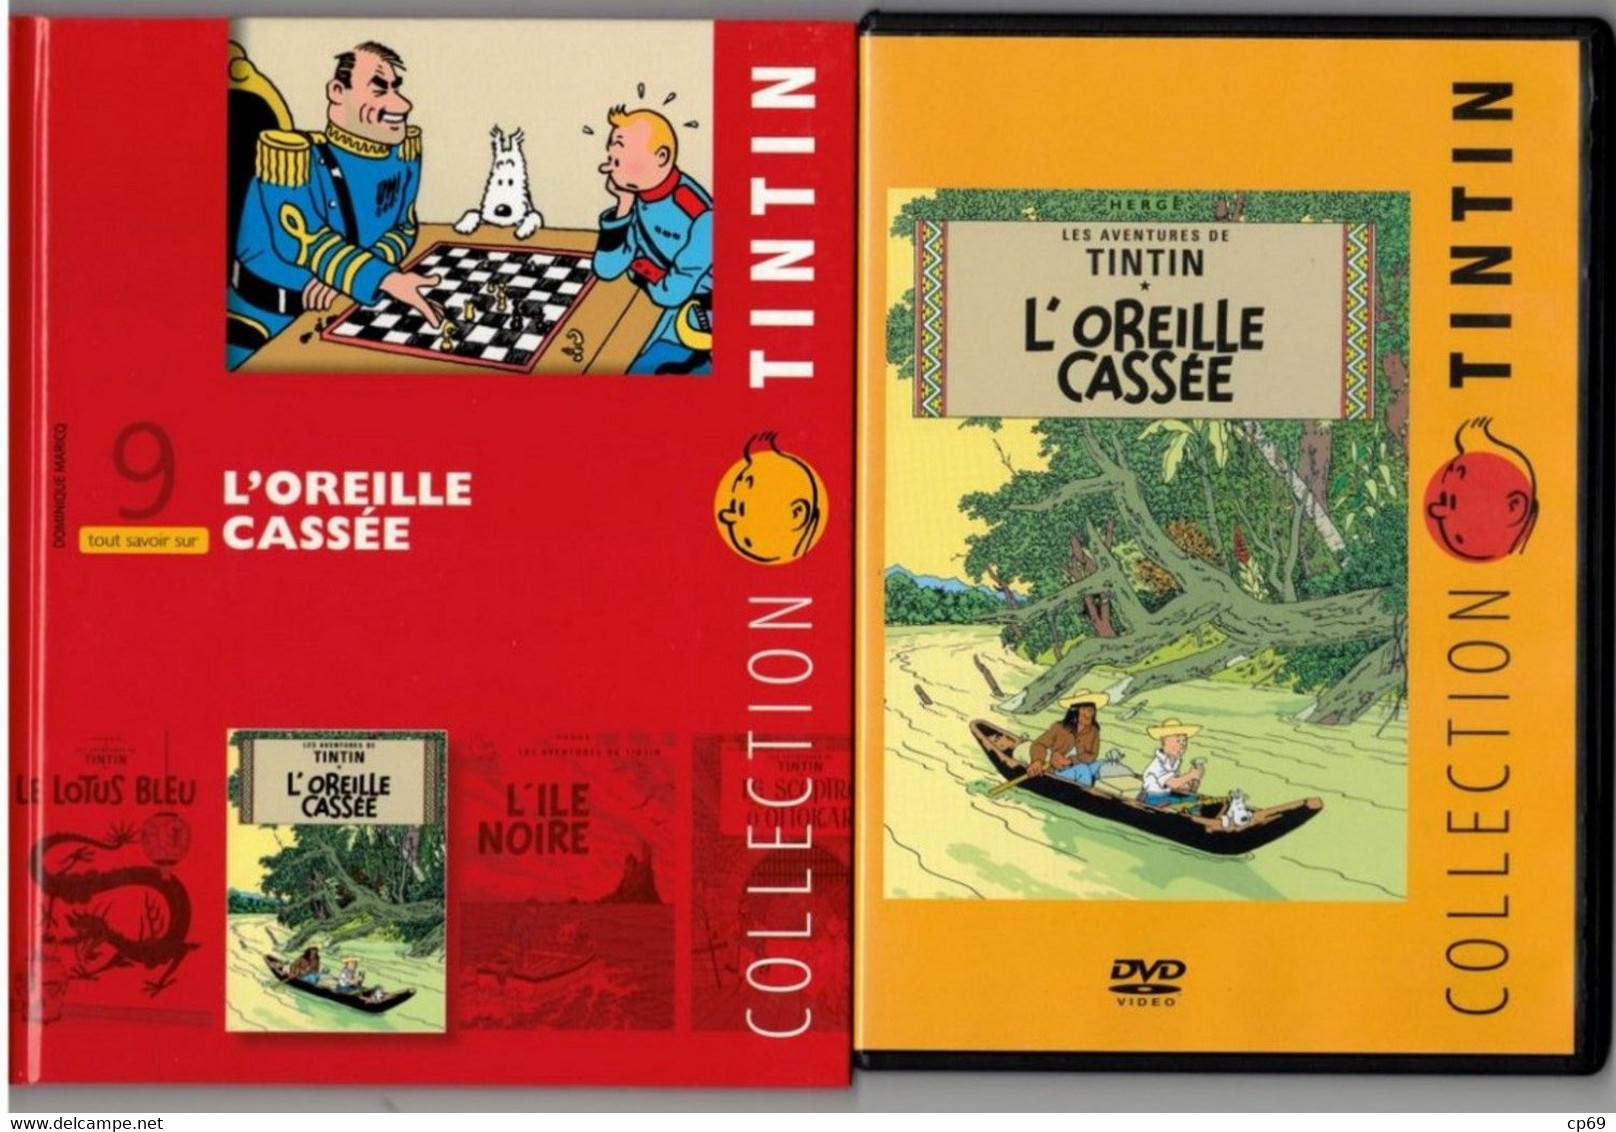 Tintin Hergé / Moulinsart 2010 Milou Chien Dog Cane L'Oreille Cassée N°9 DVD + Livret Explicatif En B.Etat - Cartoons